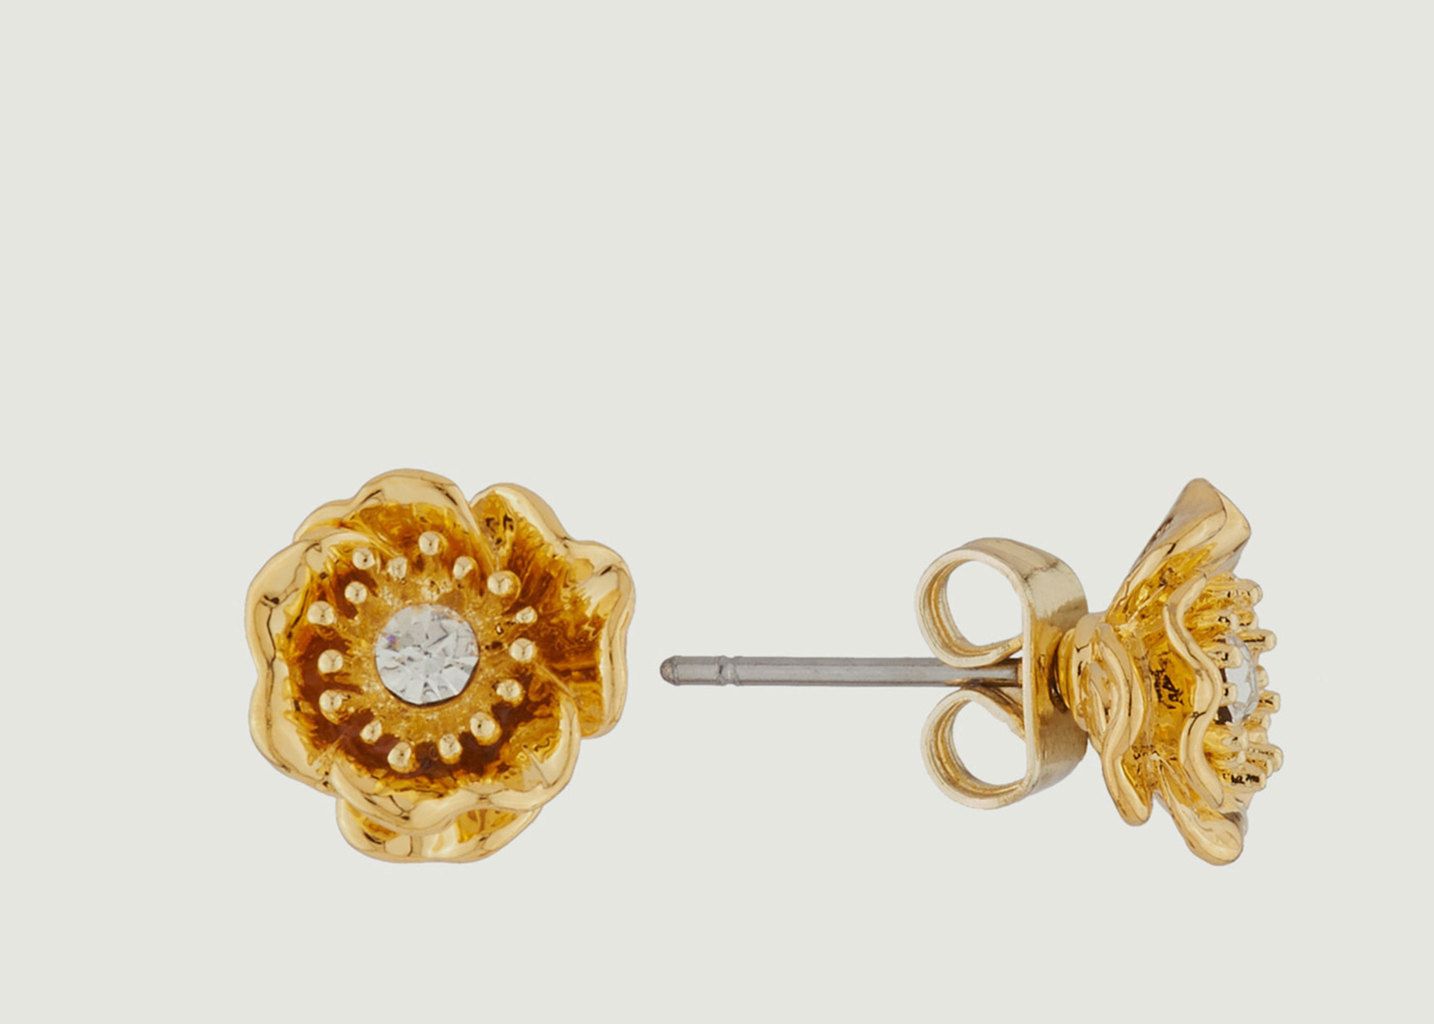 Gold Floral Earrings - Les Néréides